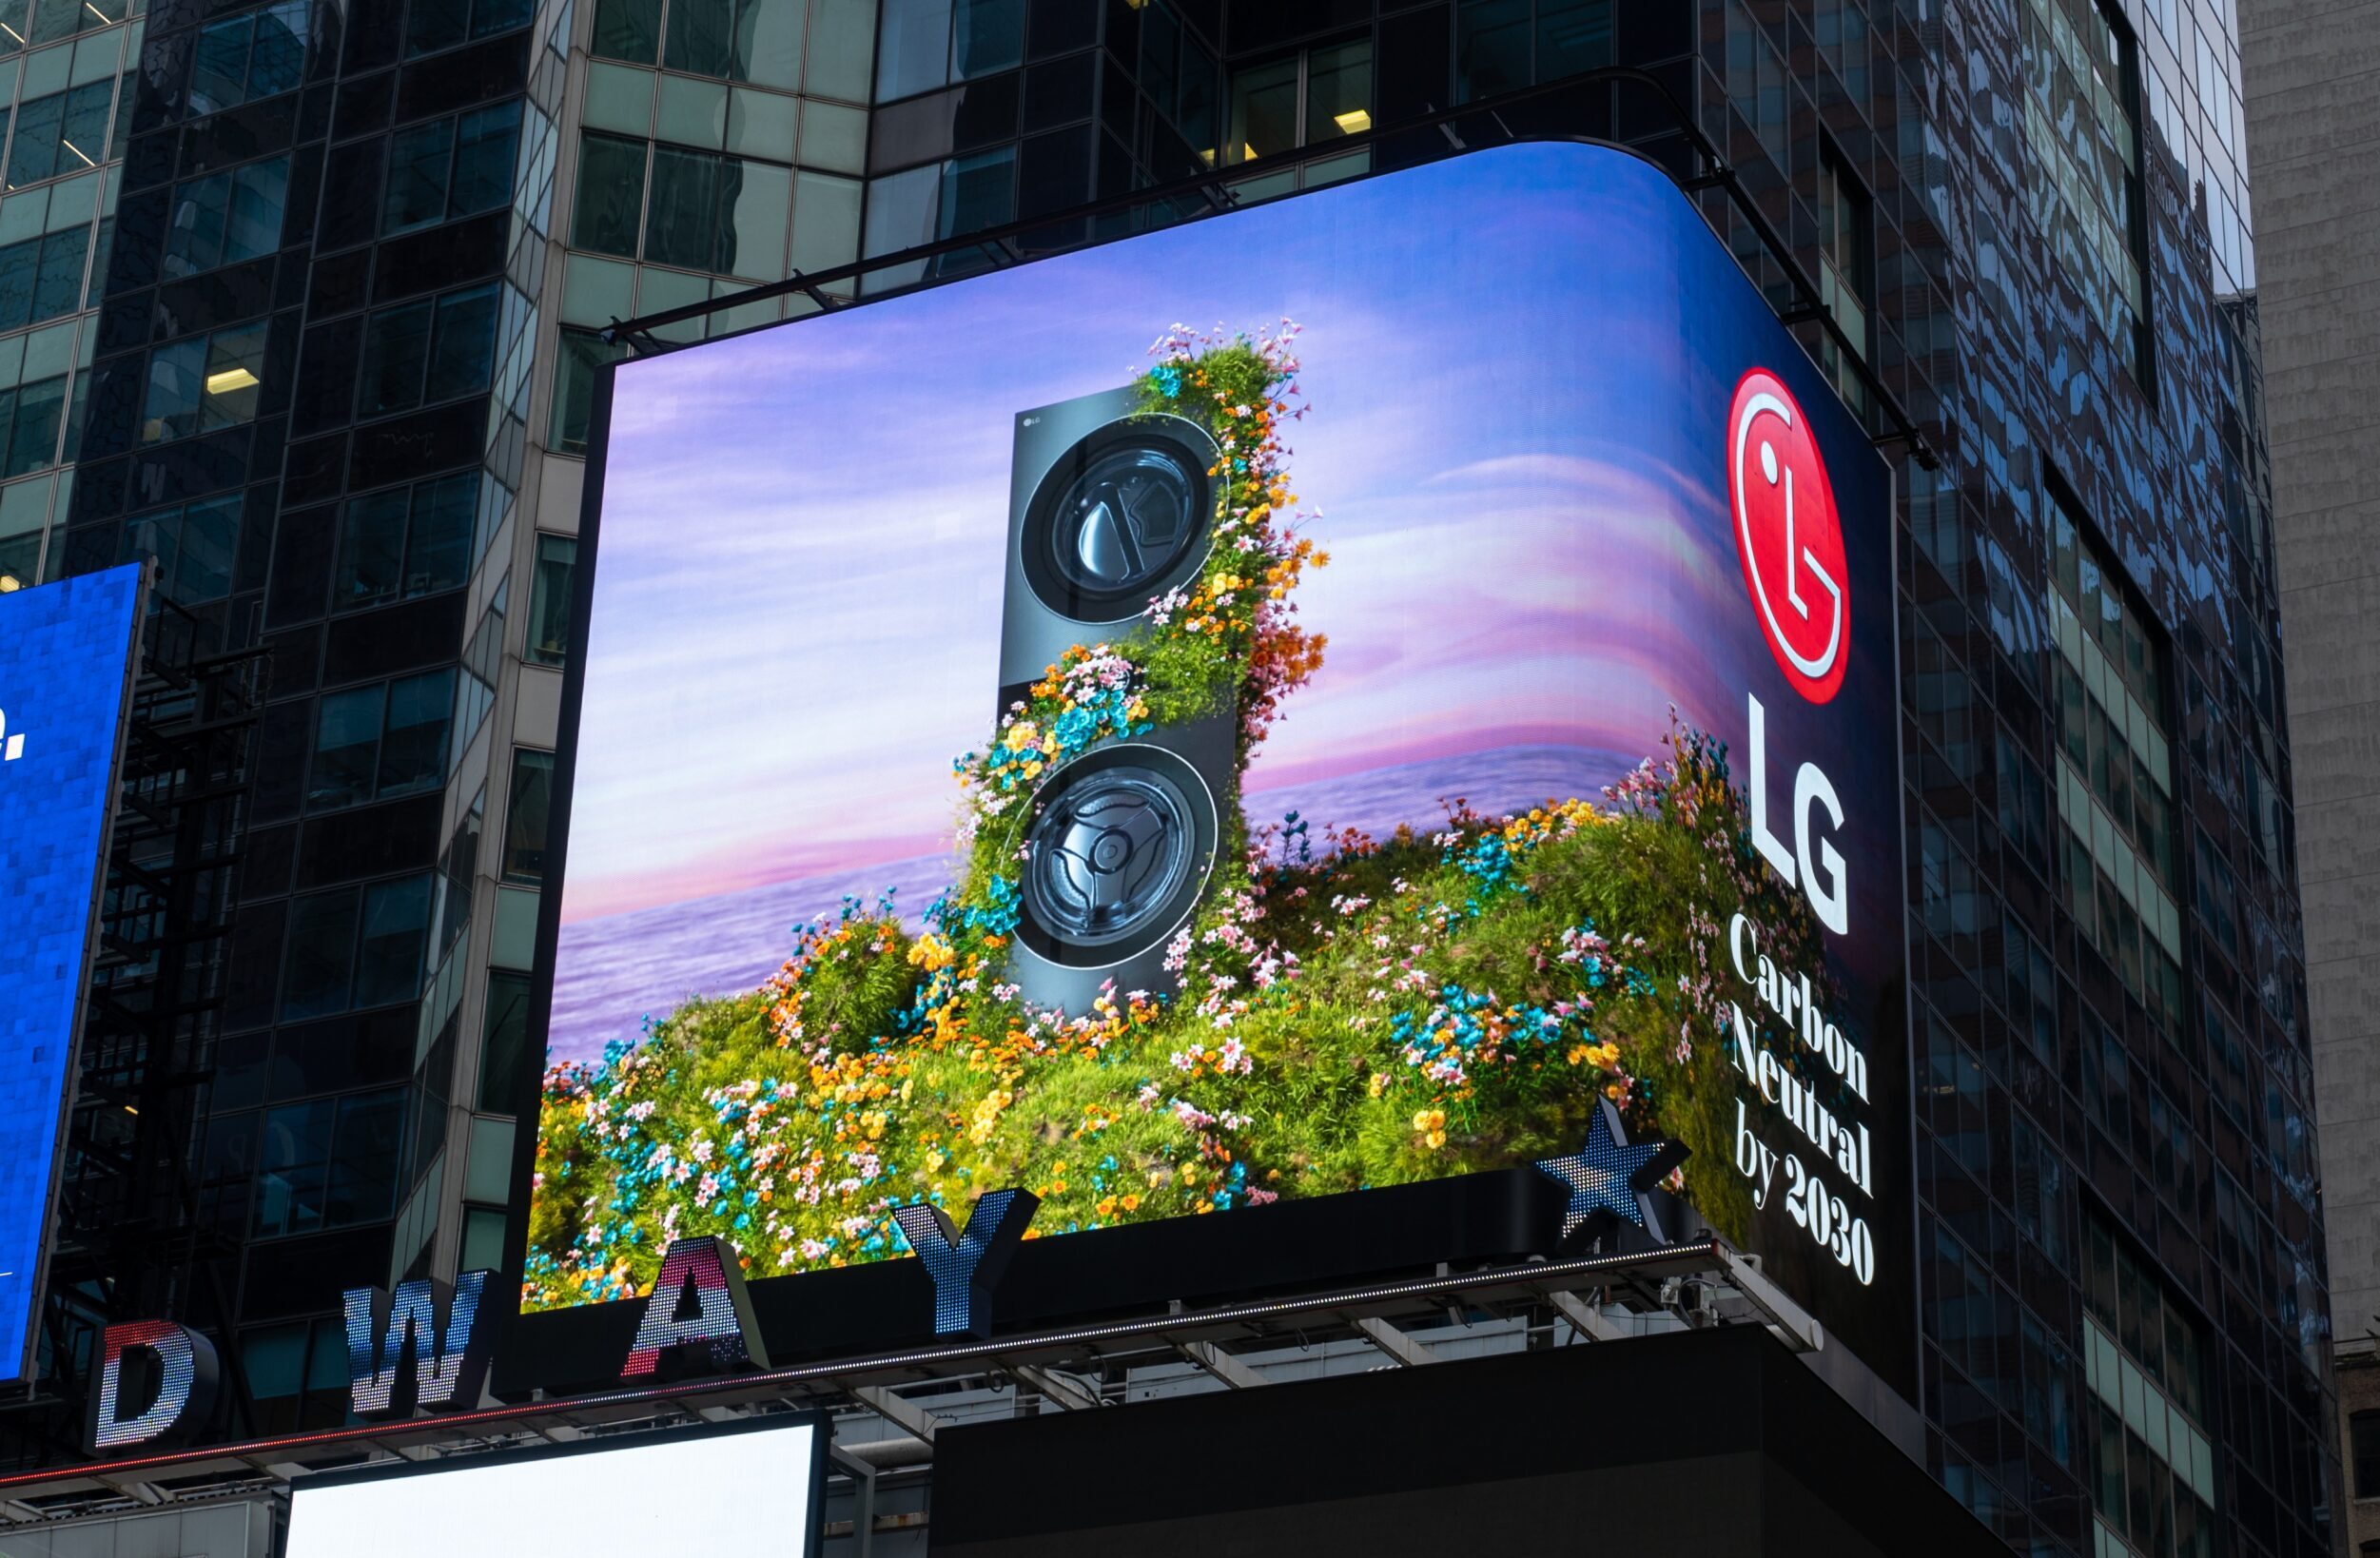 یک ویدیوی ویژه که ابتکارات سبز ال‌جی را به تصویر می‌کشد، در روز زمین، 22 آوریل، در بیلبورد میدان تایمز شهر نیویورک منتشر می‌شود. برای کسب اطلاعات بیشتر در مورد محصولات دارای گواهینامه ENERGY STAR LG Electronics و طرح‌های سبز، لطفاً از www.LG.com دیدن کنید.